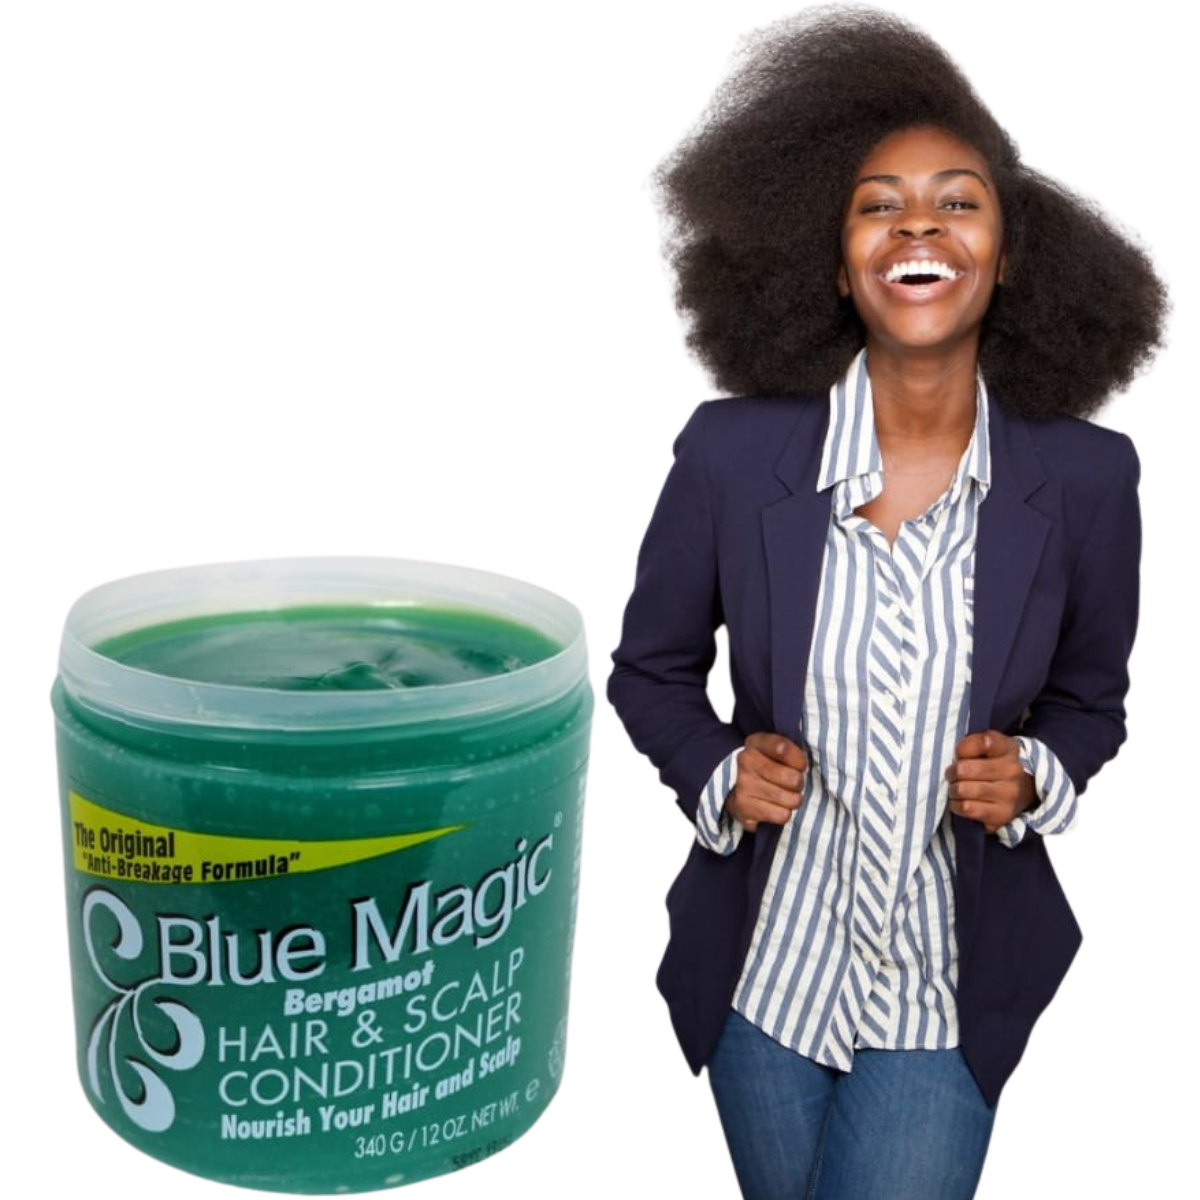 blue magic hair scalp conditioner comprar en onlineshoppingcenterg Colombia centro de compras en linea osc 4